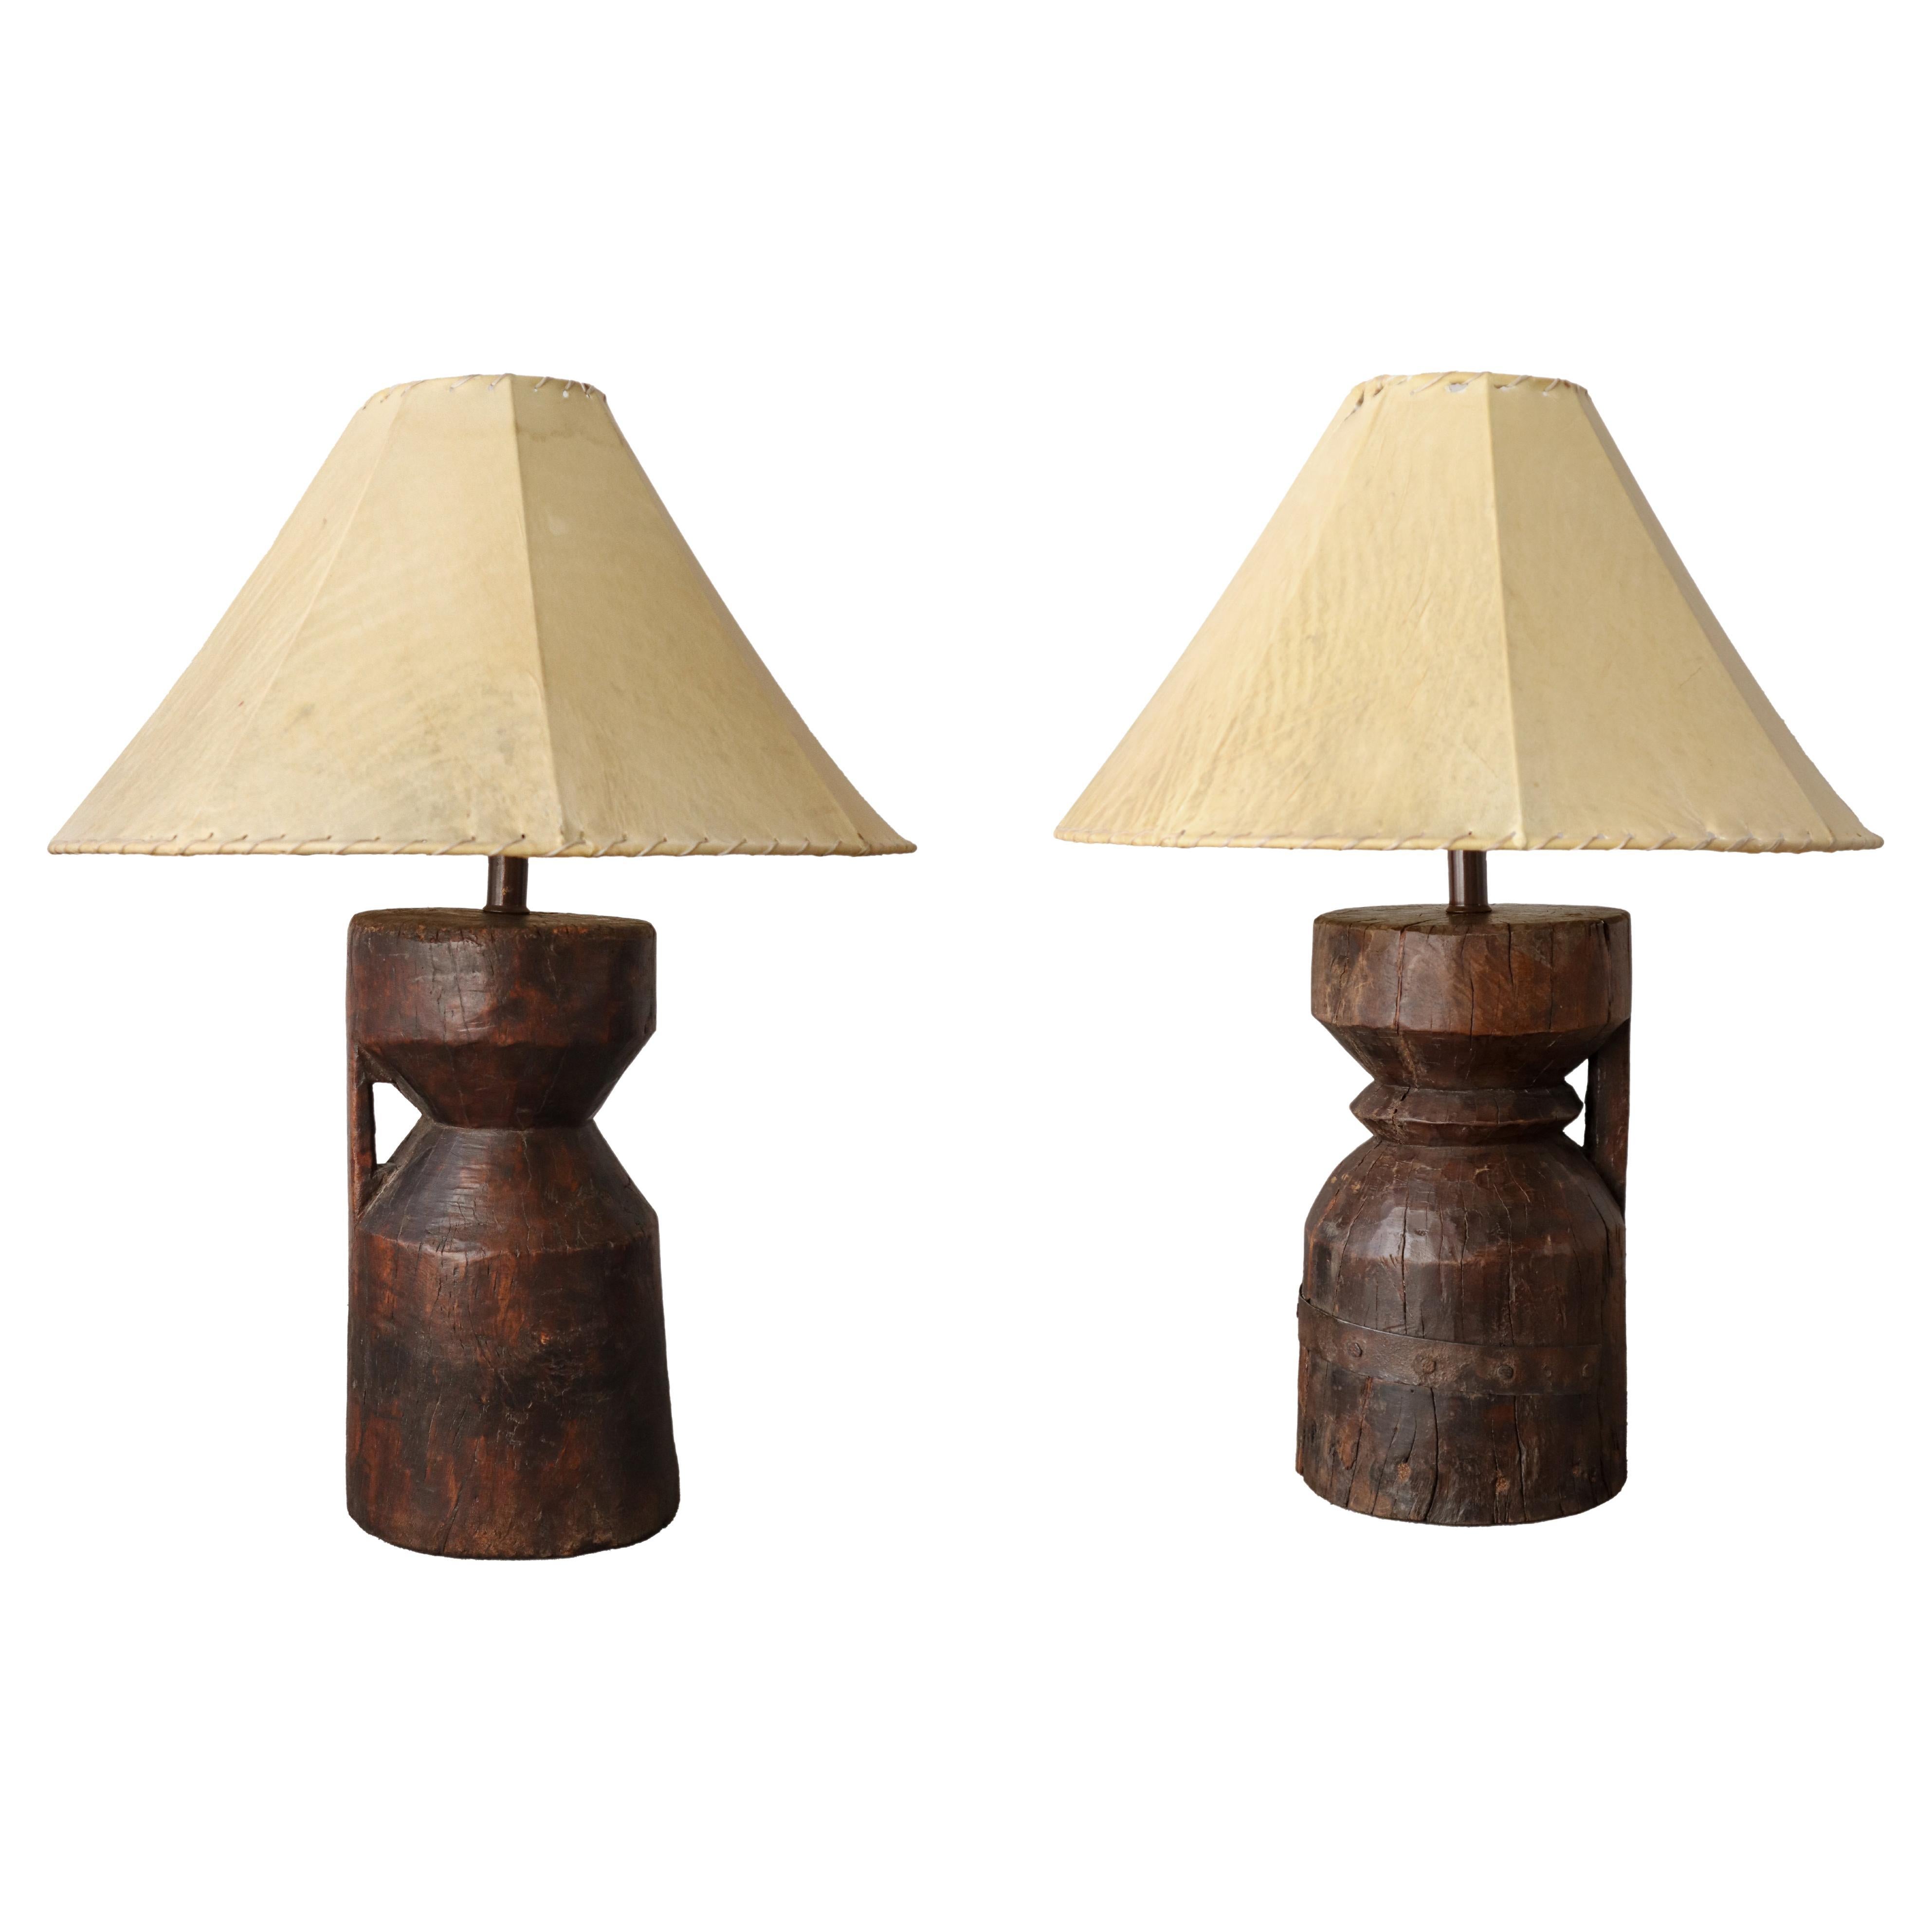 Paar primitive afrikanische geschnitzte Holz-Tischlampen